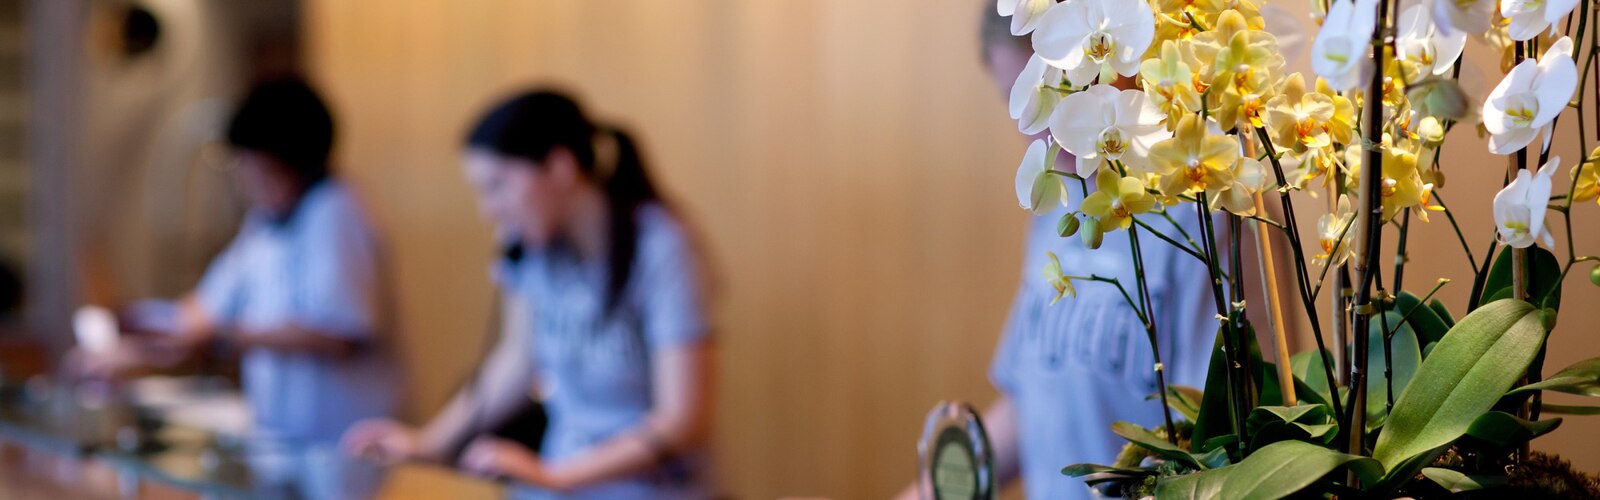 Oteldeki resepsiyon masasında duran bir orkide saksısı ve arka planda üç resepsiyonist